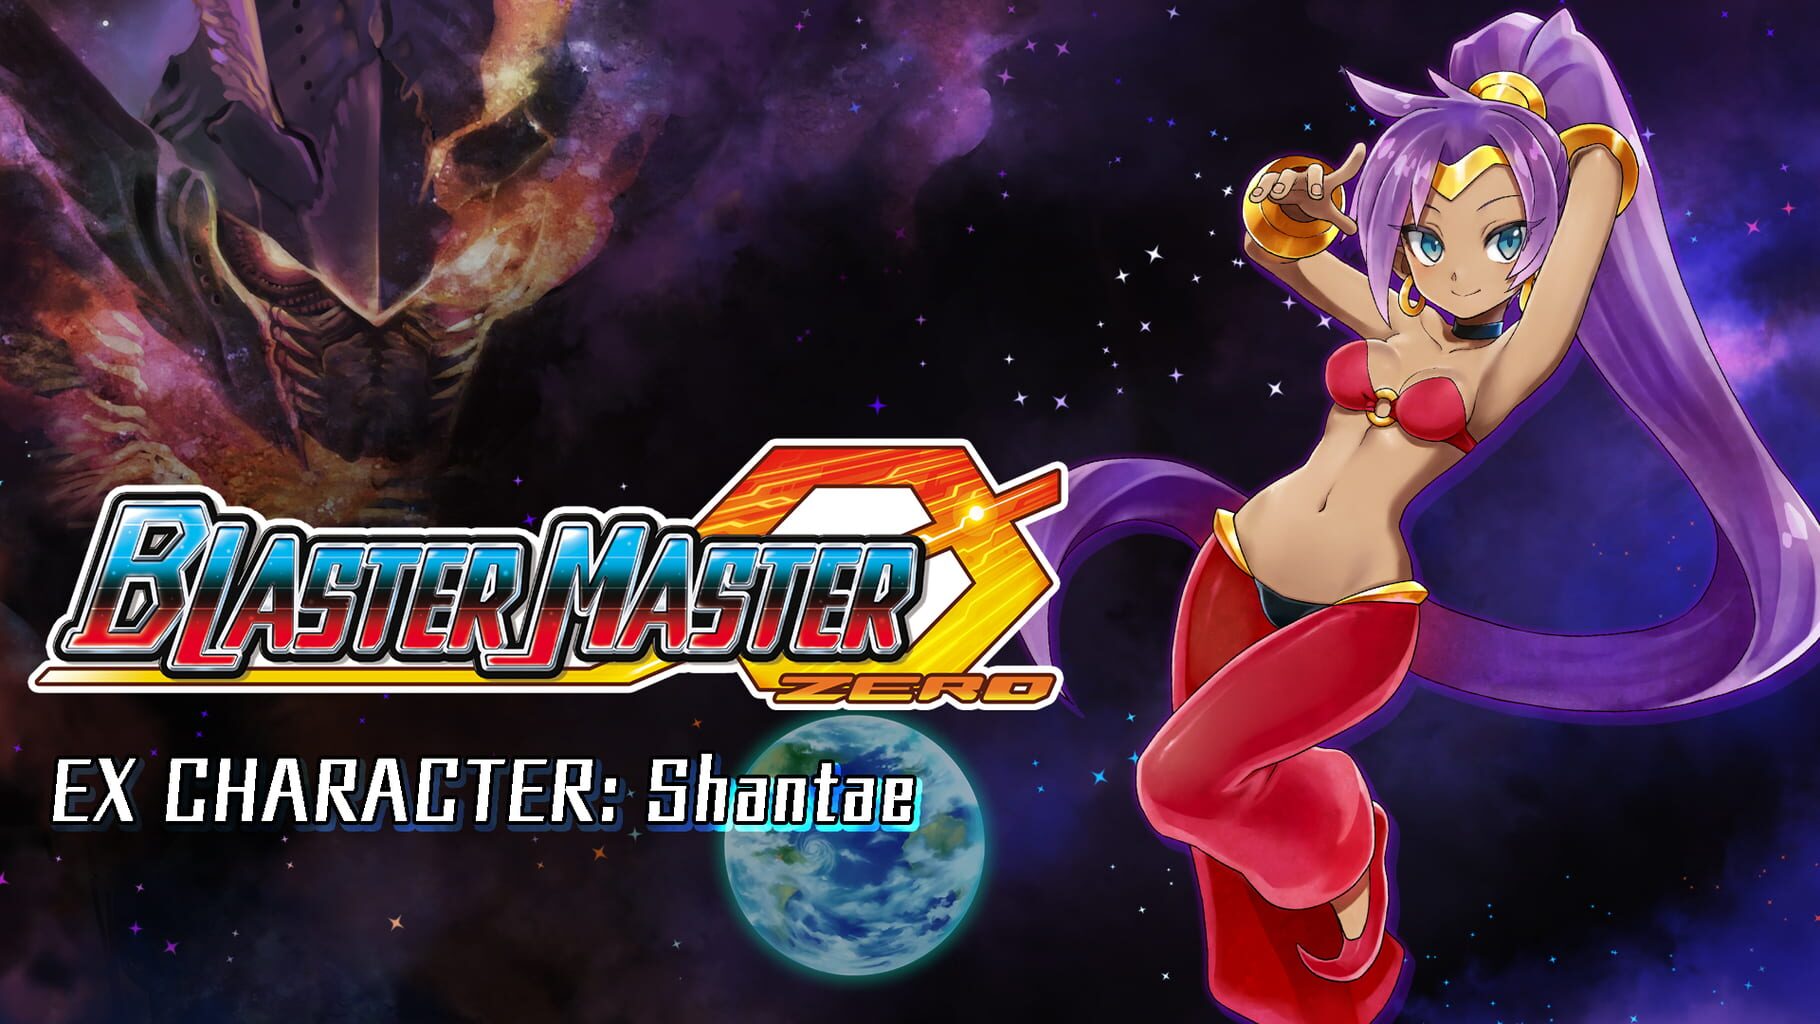 Arte - Blaster Master Zero: EX Character - Shantae